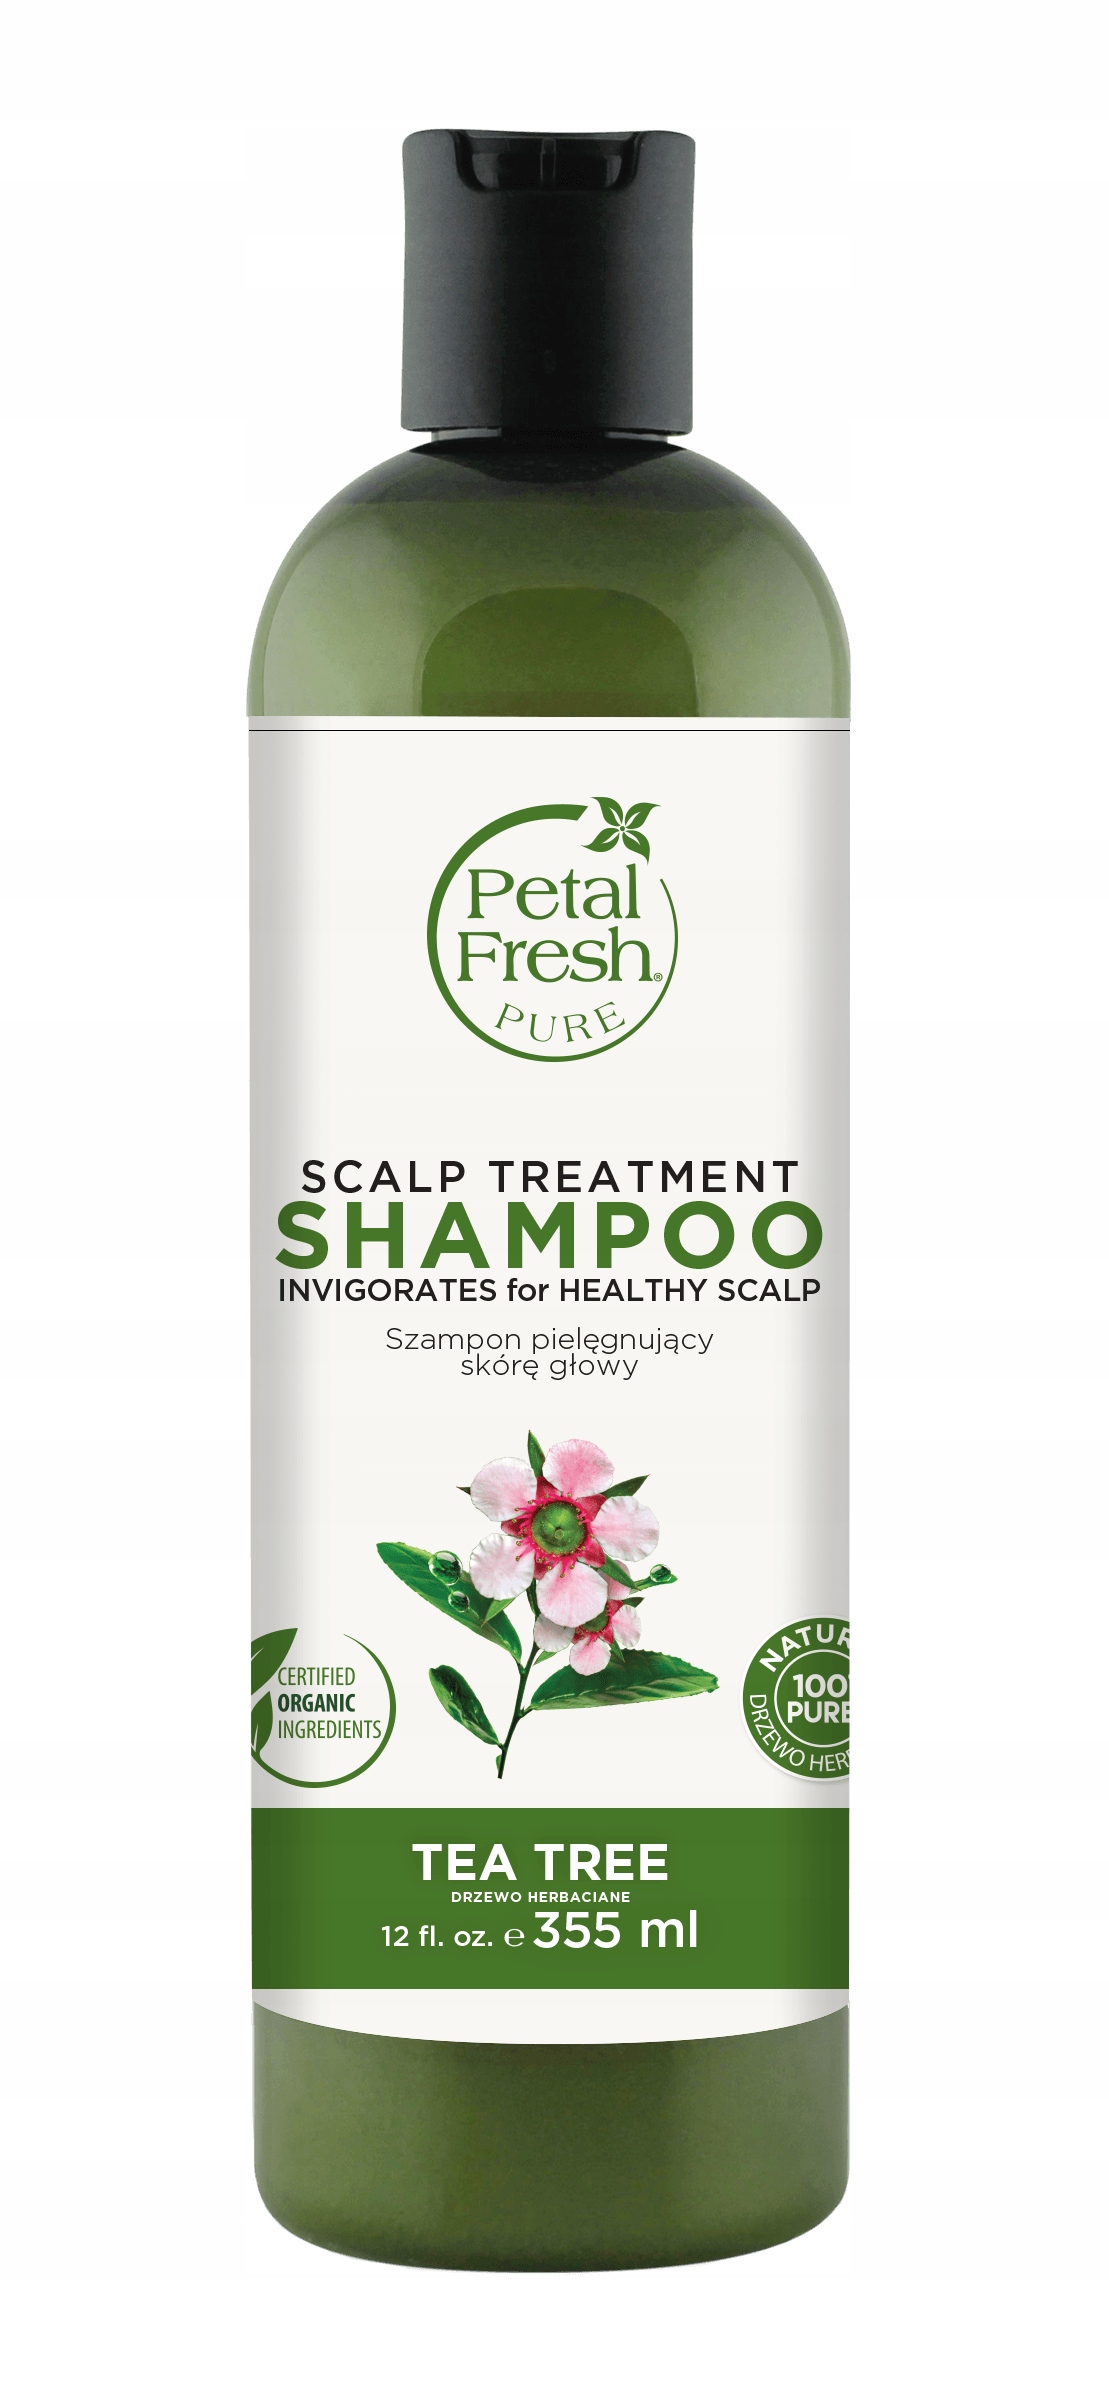 petal fresh hair rescue szampon przeciwłupieżowy opinir